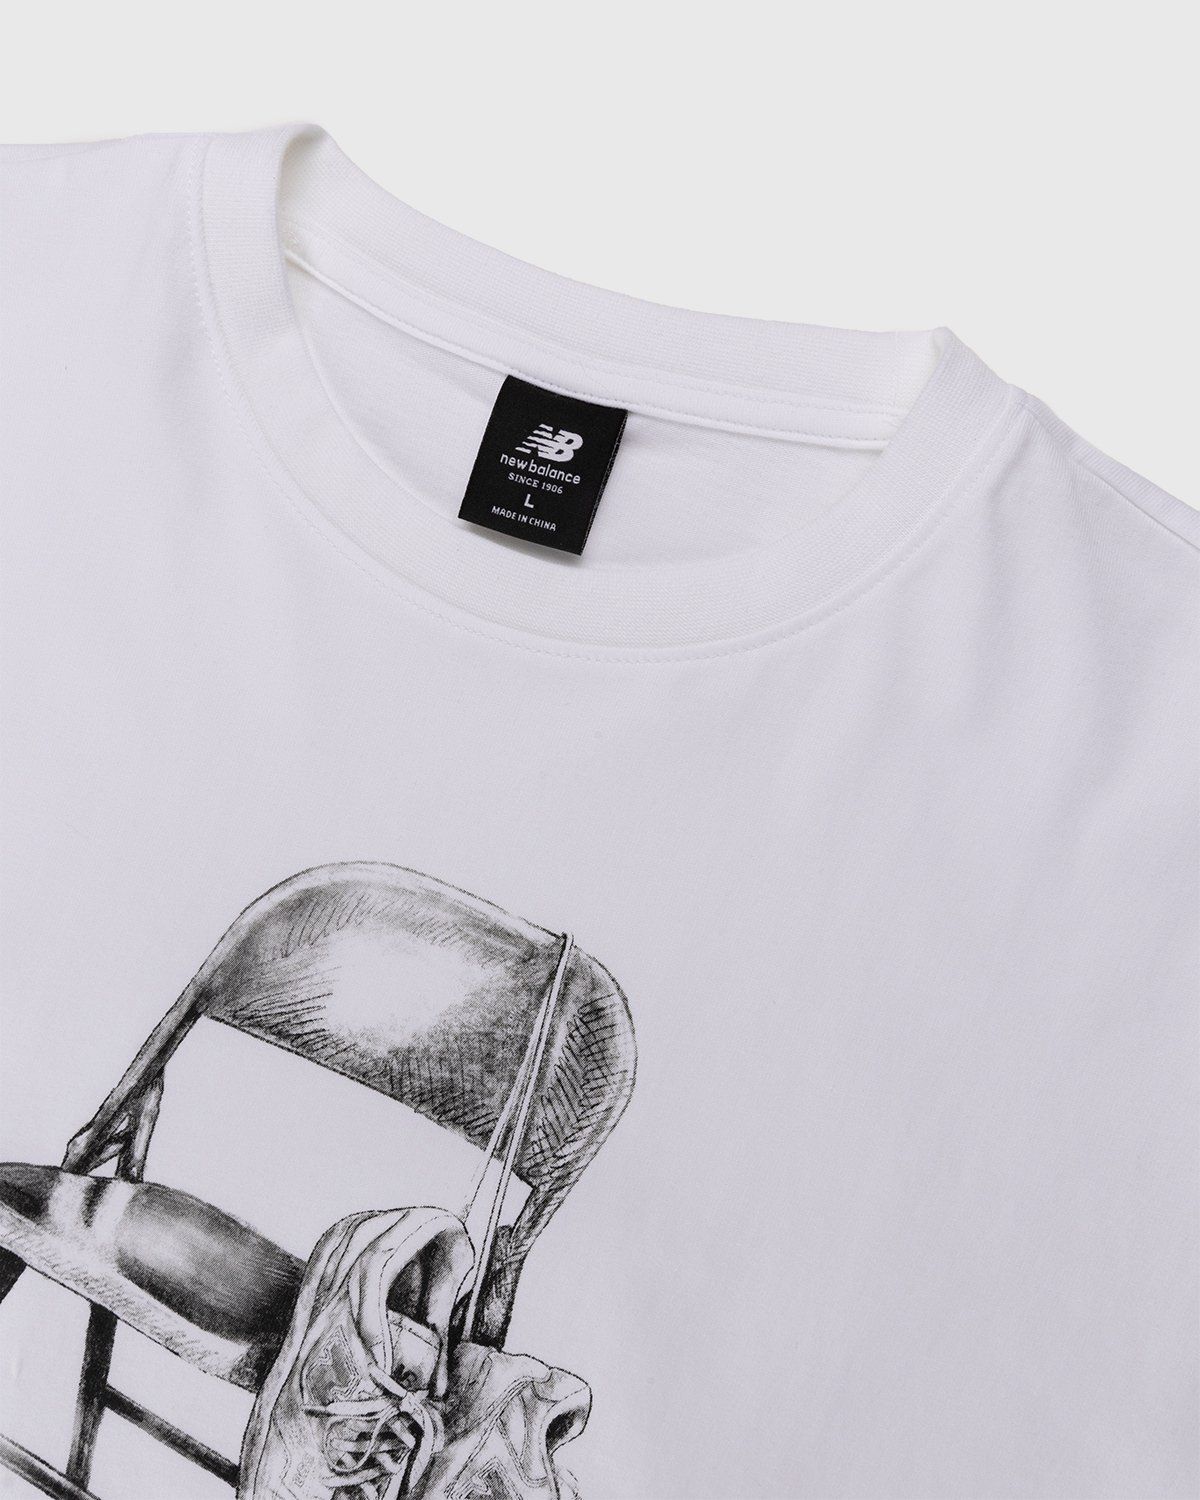 New Balance – Conversations Amongst Us Heavyweight T-Shirt White - T-shirts - White - Image 4